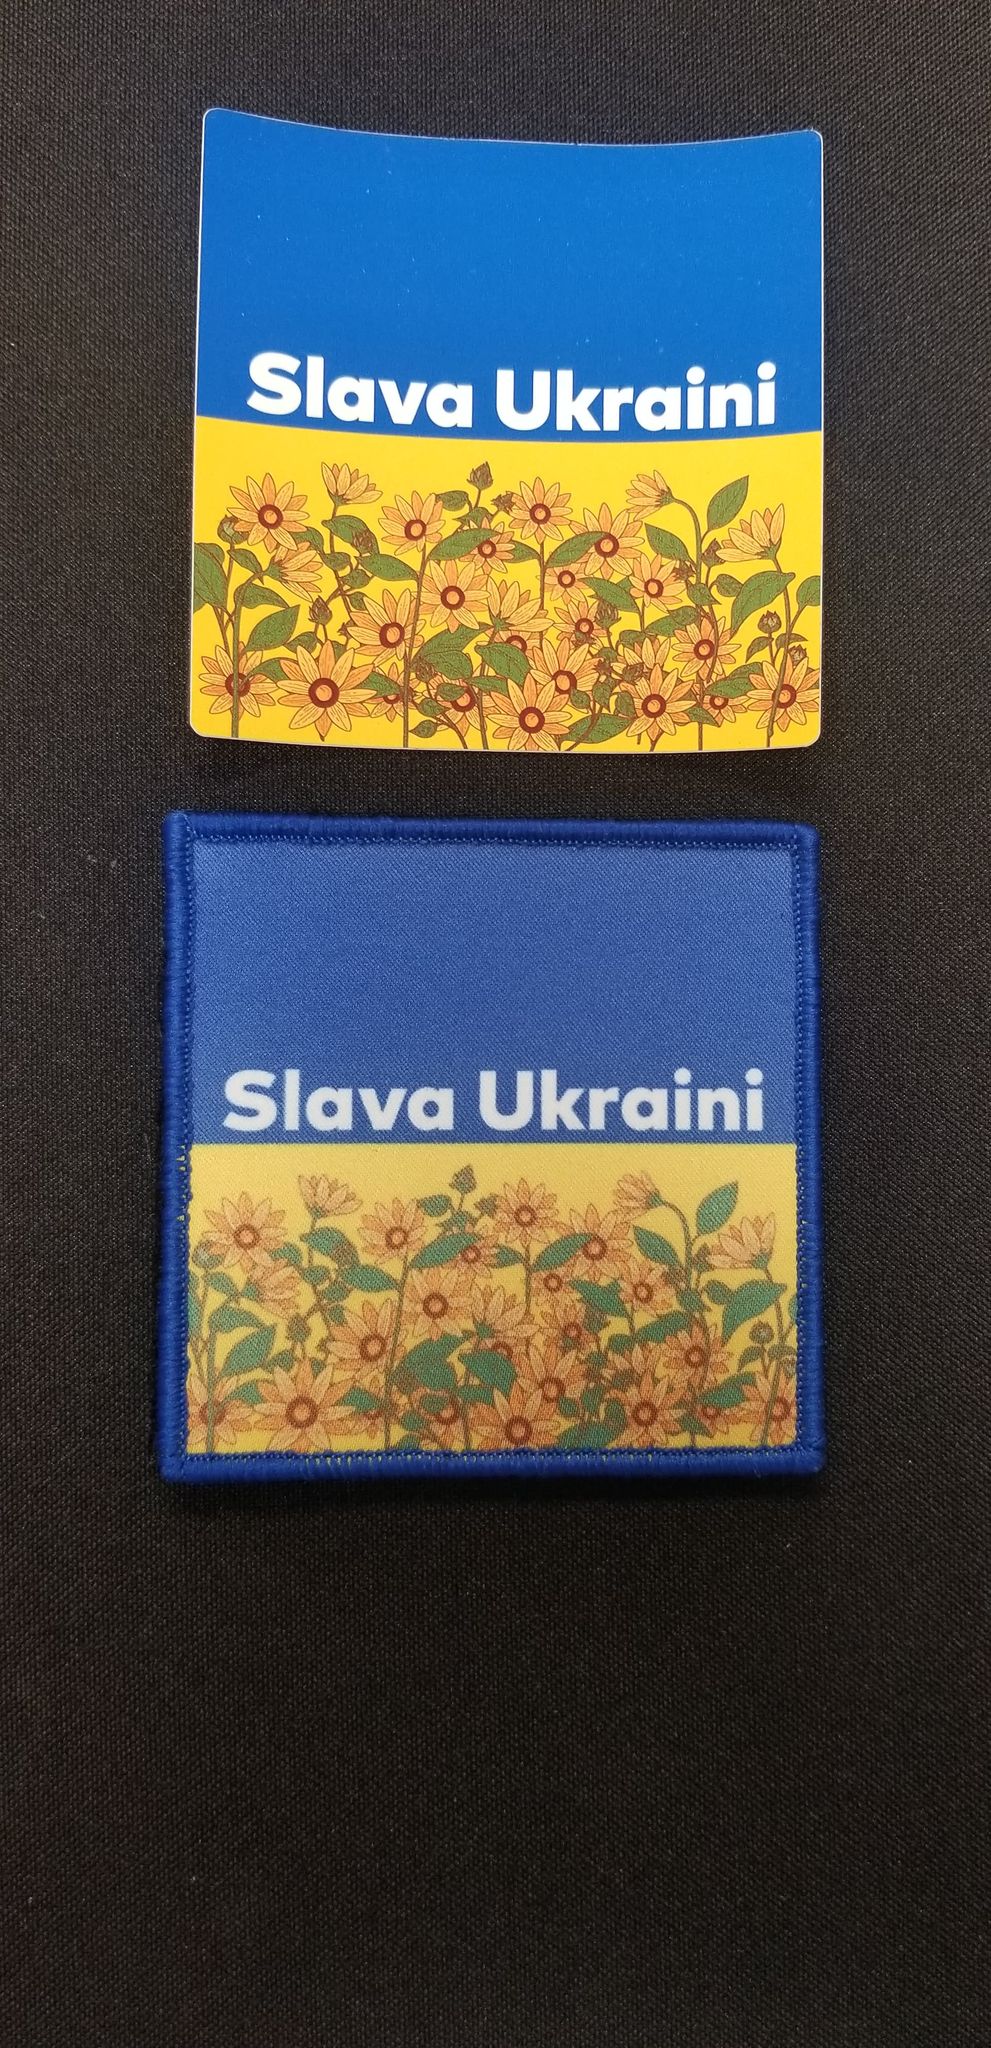 Slava Ukraini Patch and Sticker Combo